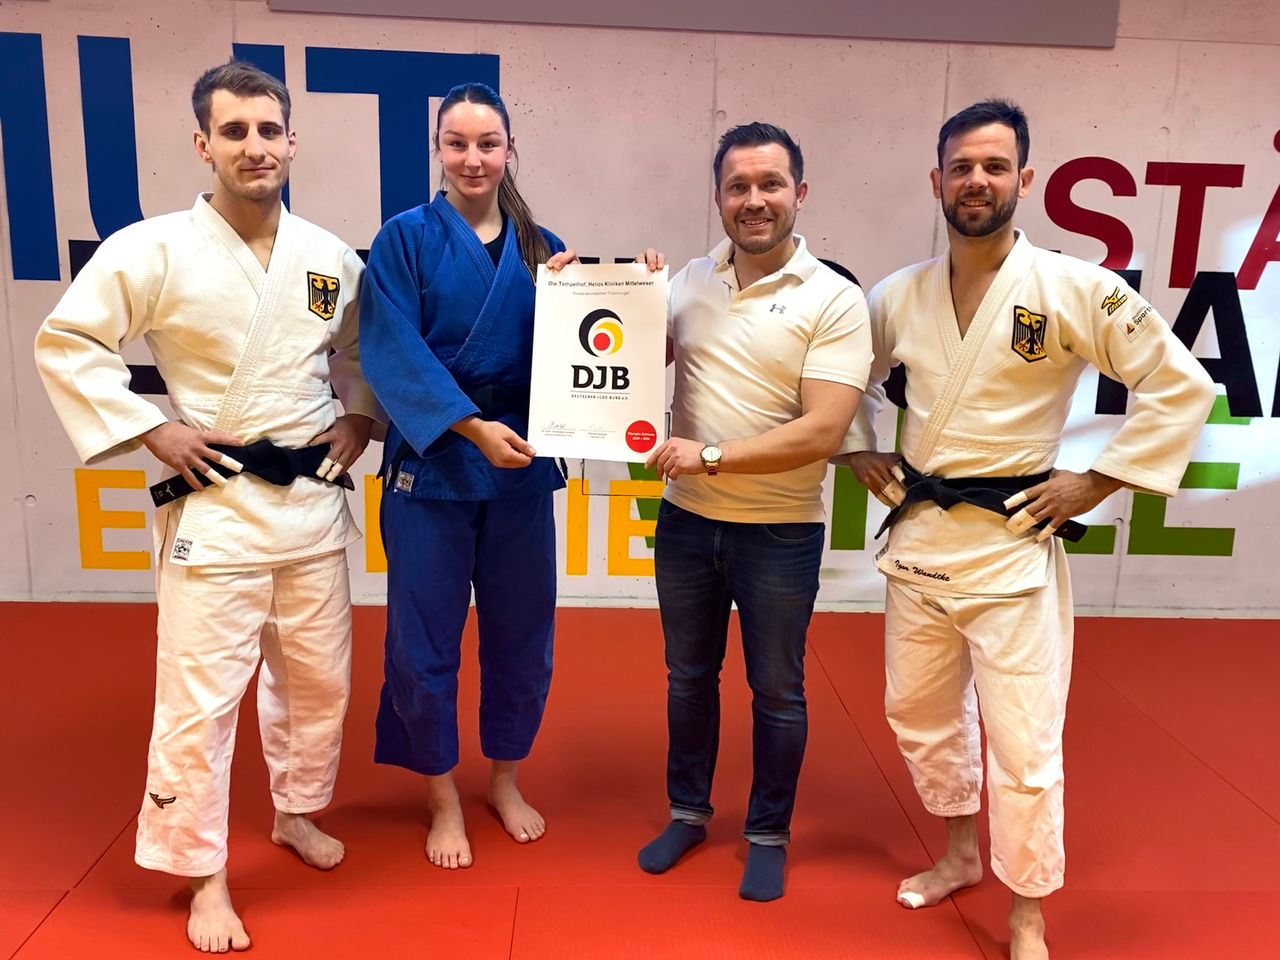 Für den Deutschen Judo-Bund: Nienburger Orthopäde macht Füße fit für Olympia